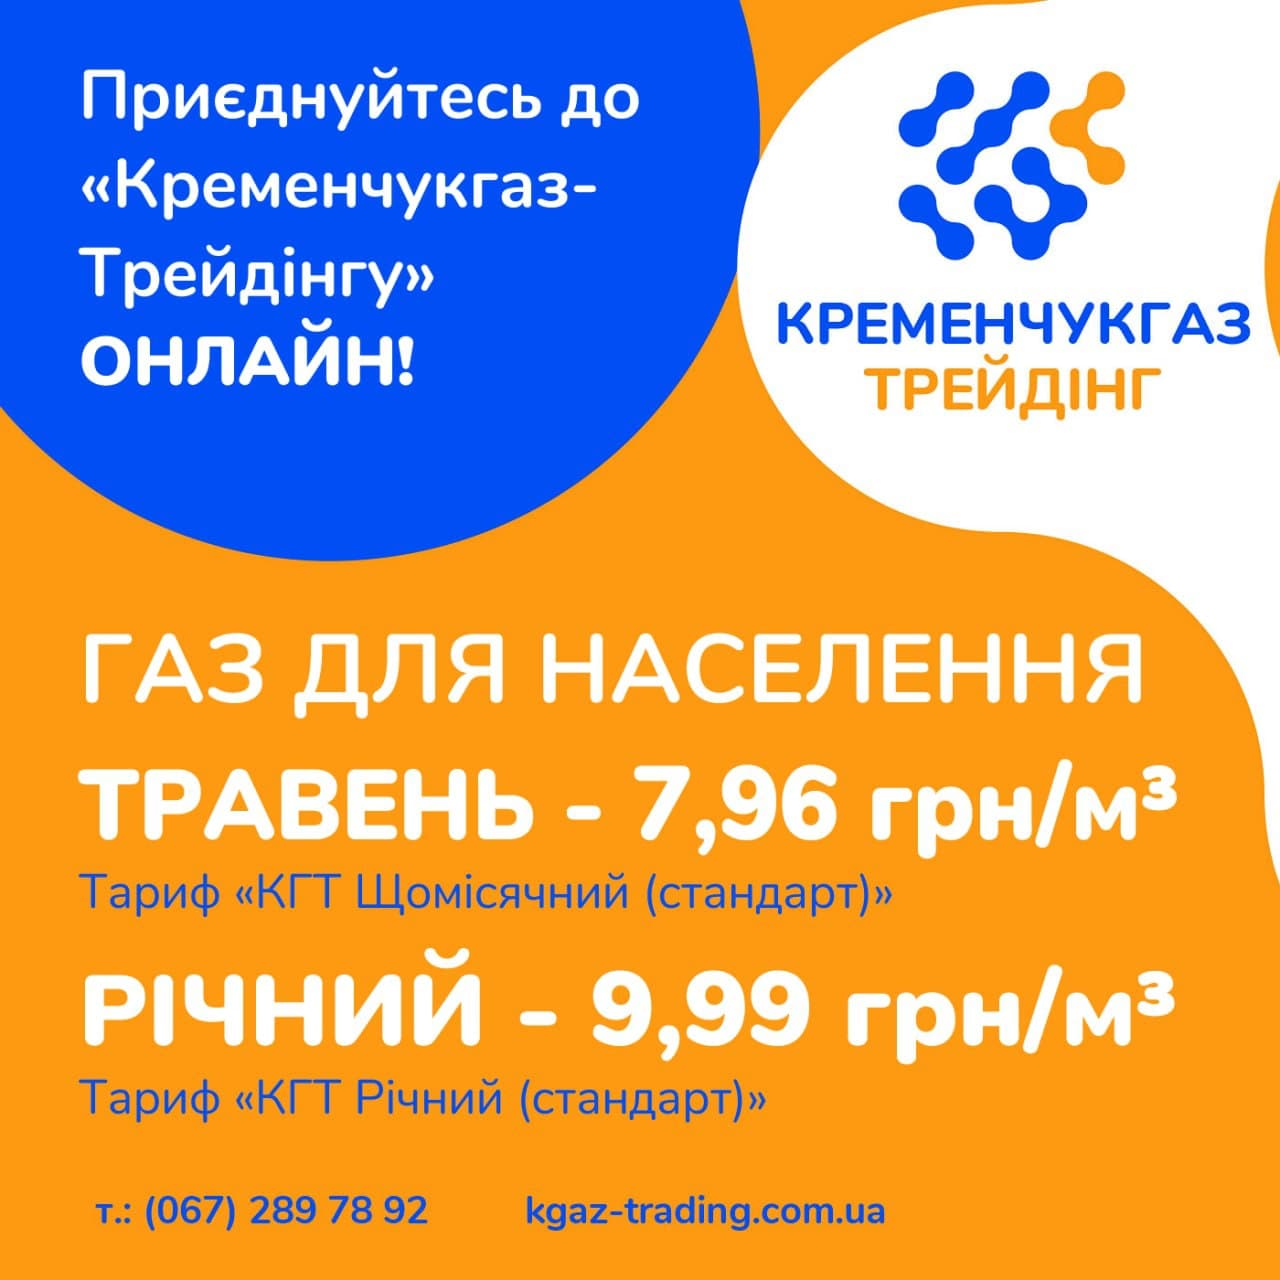 Приєднатися до «Кременчукгаз-Трейдінгу» можна дистанційно – постачальник газу пропонує споживачам онлайн-сервіс